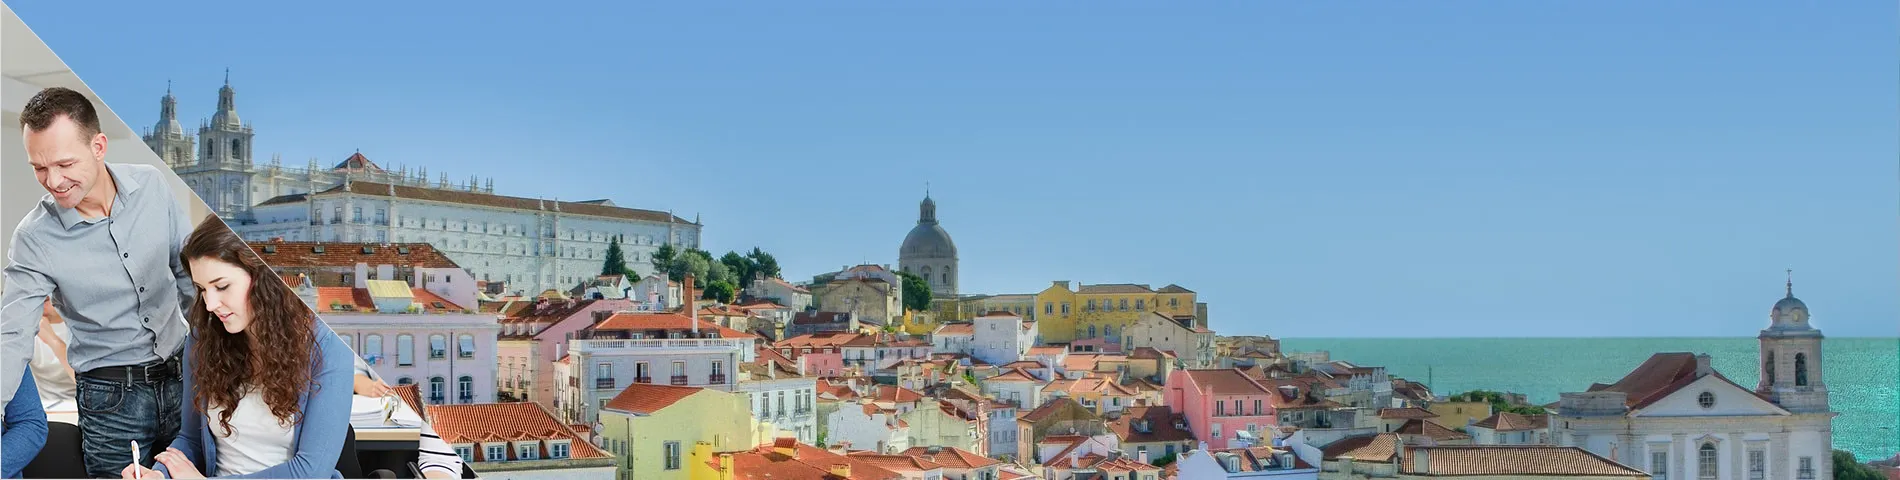 Lisboa - Combinado: Clases en Grupo + Particulares